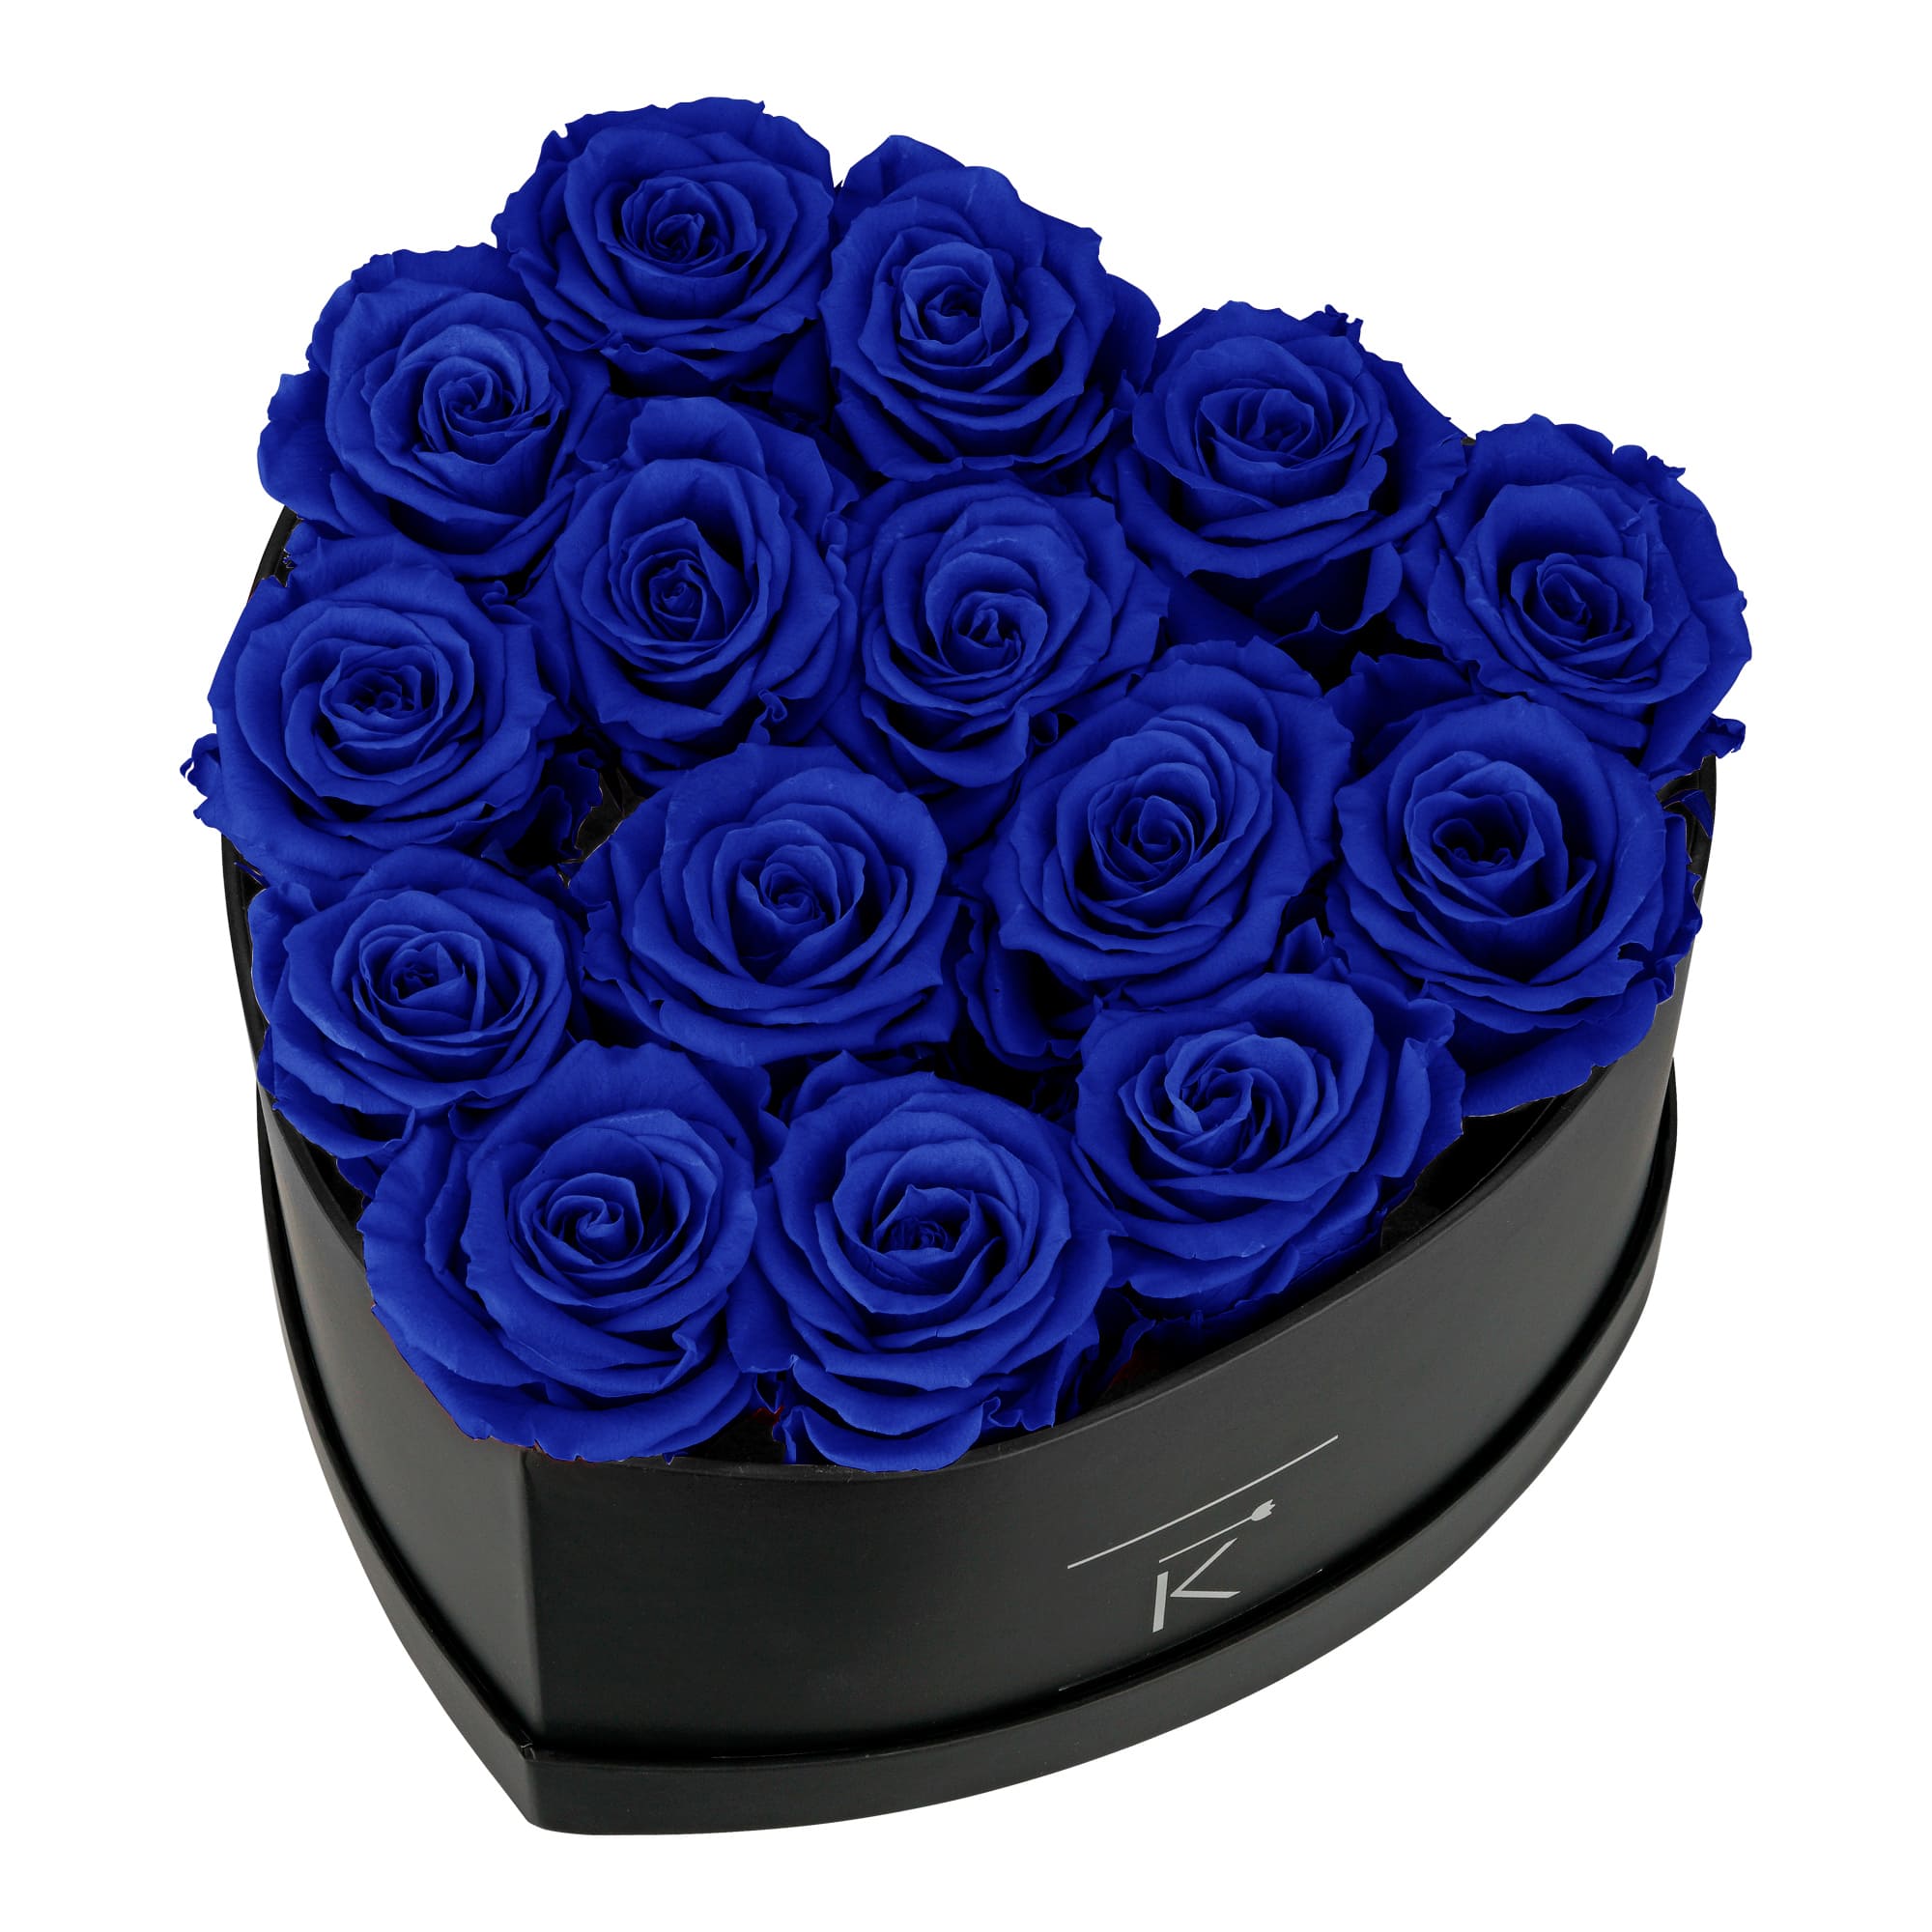 Rosenbox in Herzform mit blauen Infinityrosen